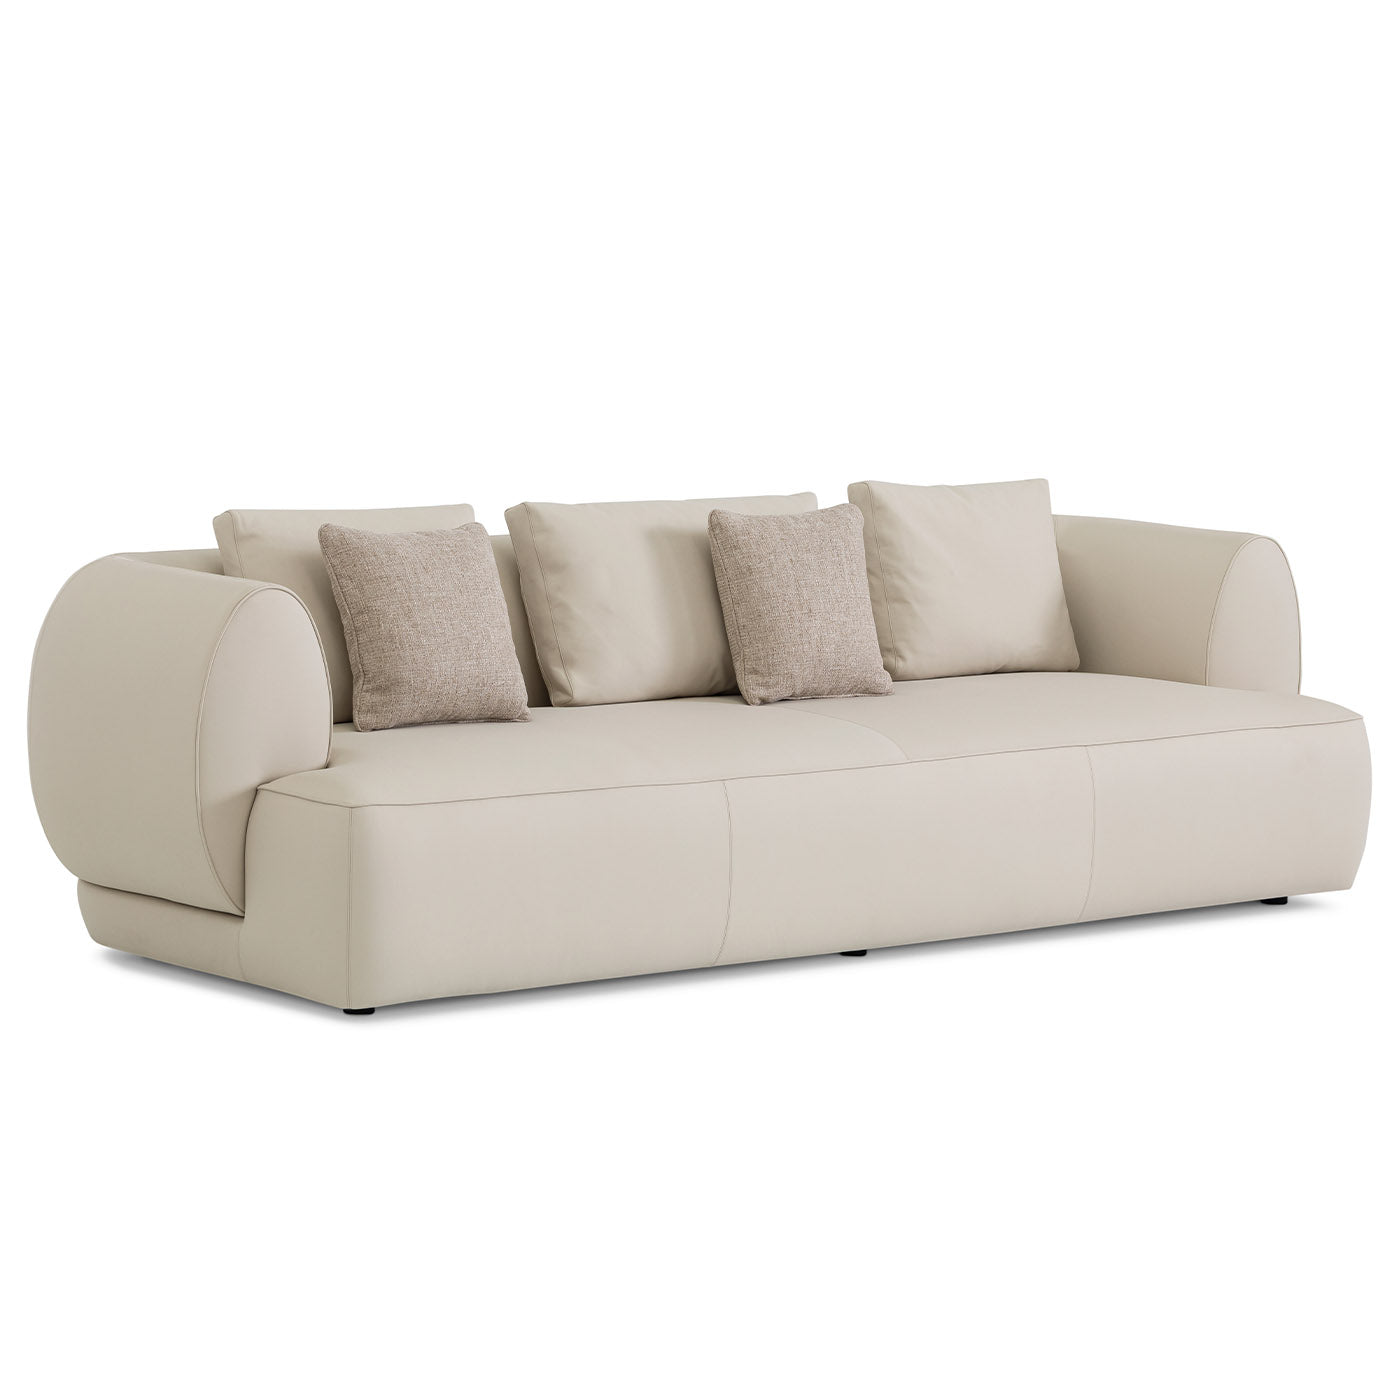 Botero 4-Seat Sofa - Alternative view 2